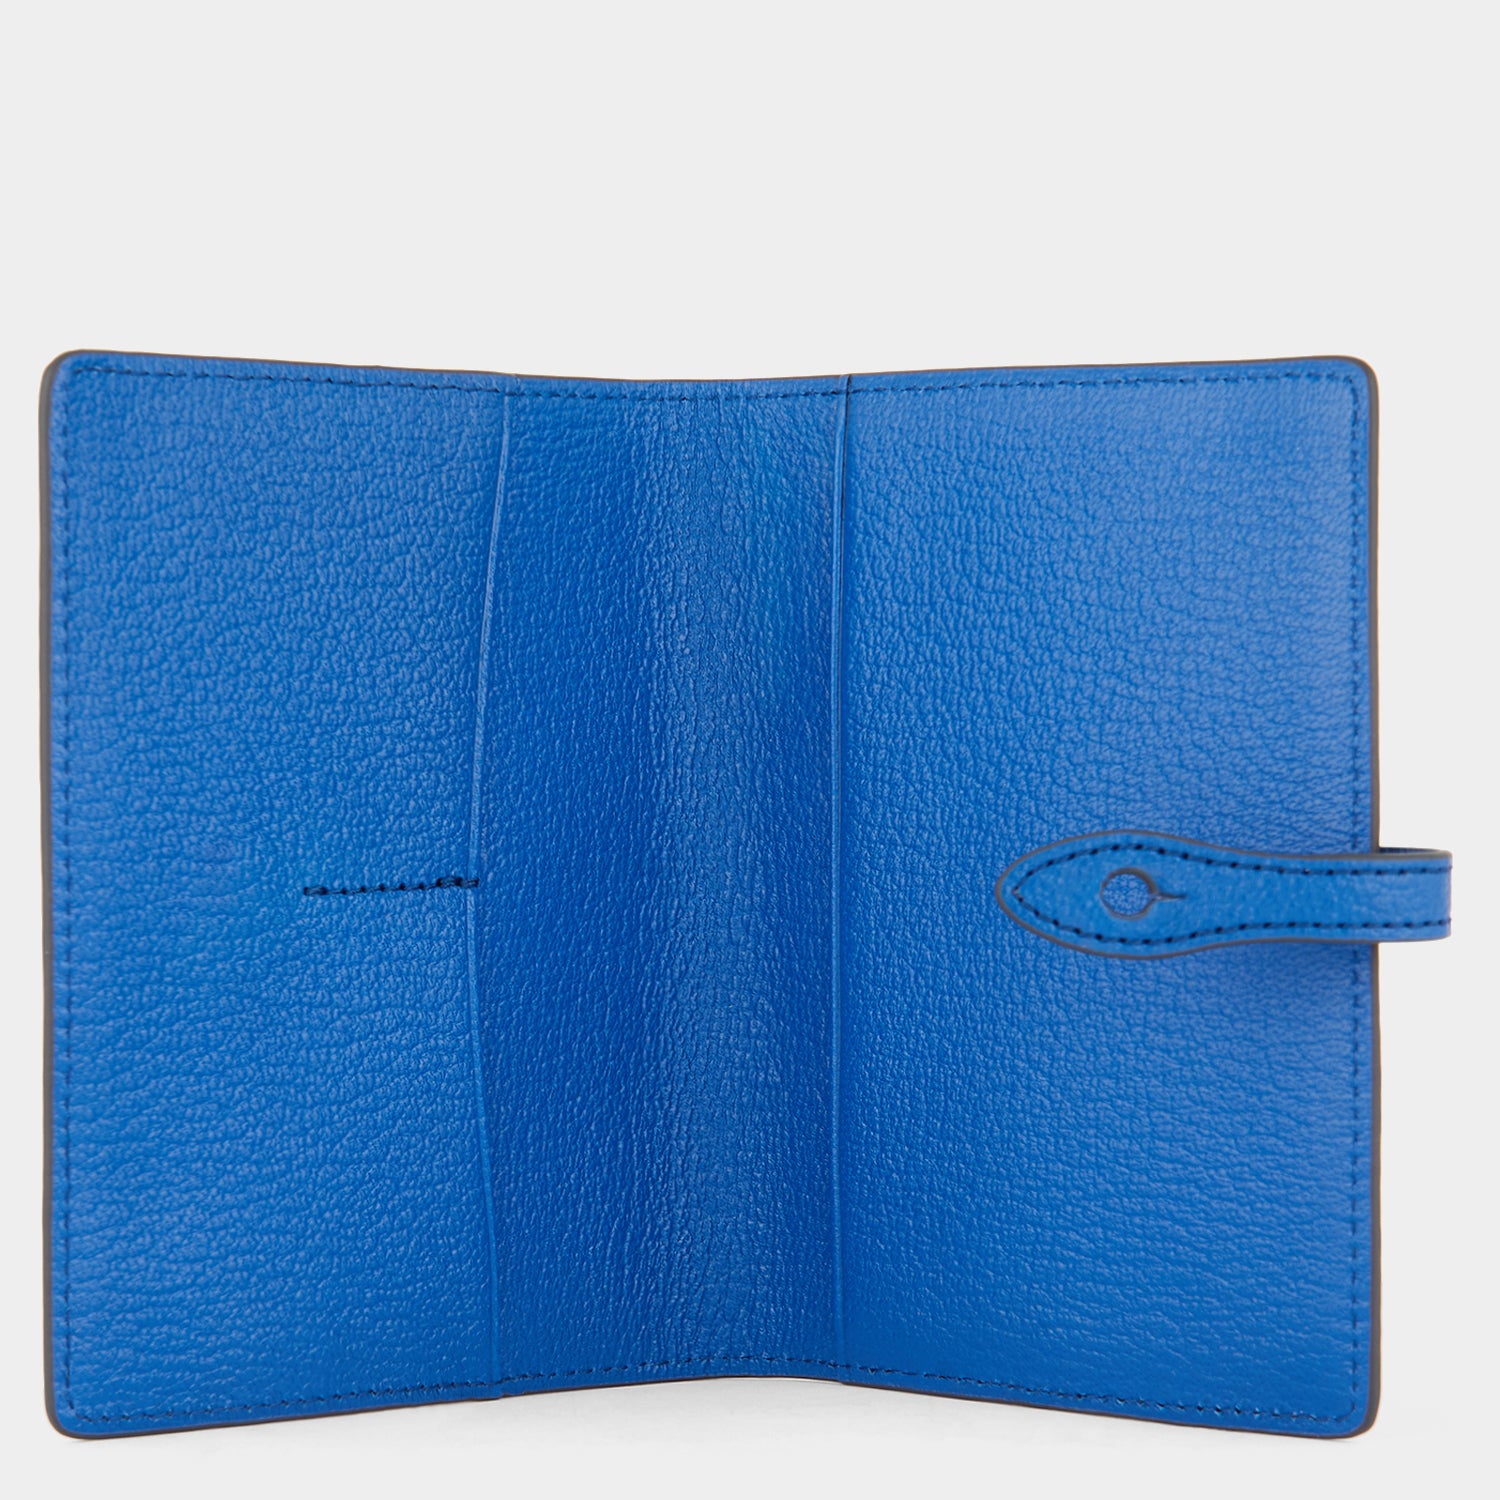 ビスポーク パスポート ケース -

                  
                    Capra Leather in Electric Blue -
                  

                  Anya Hindmarch JP
